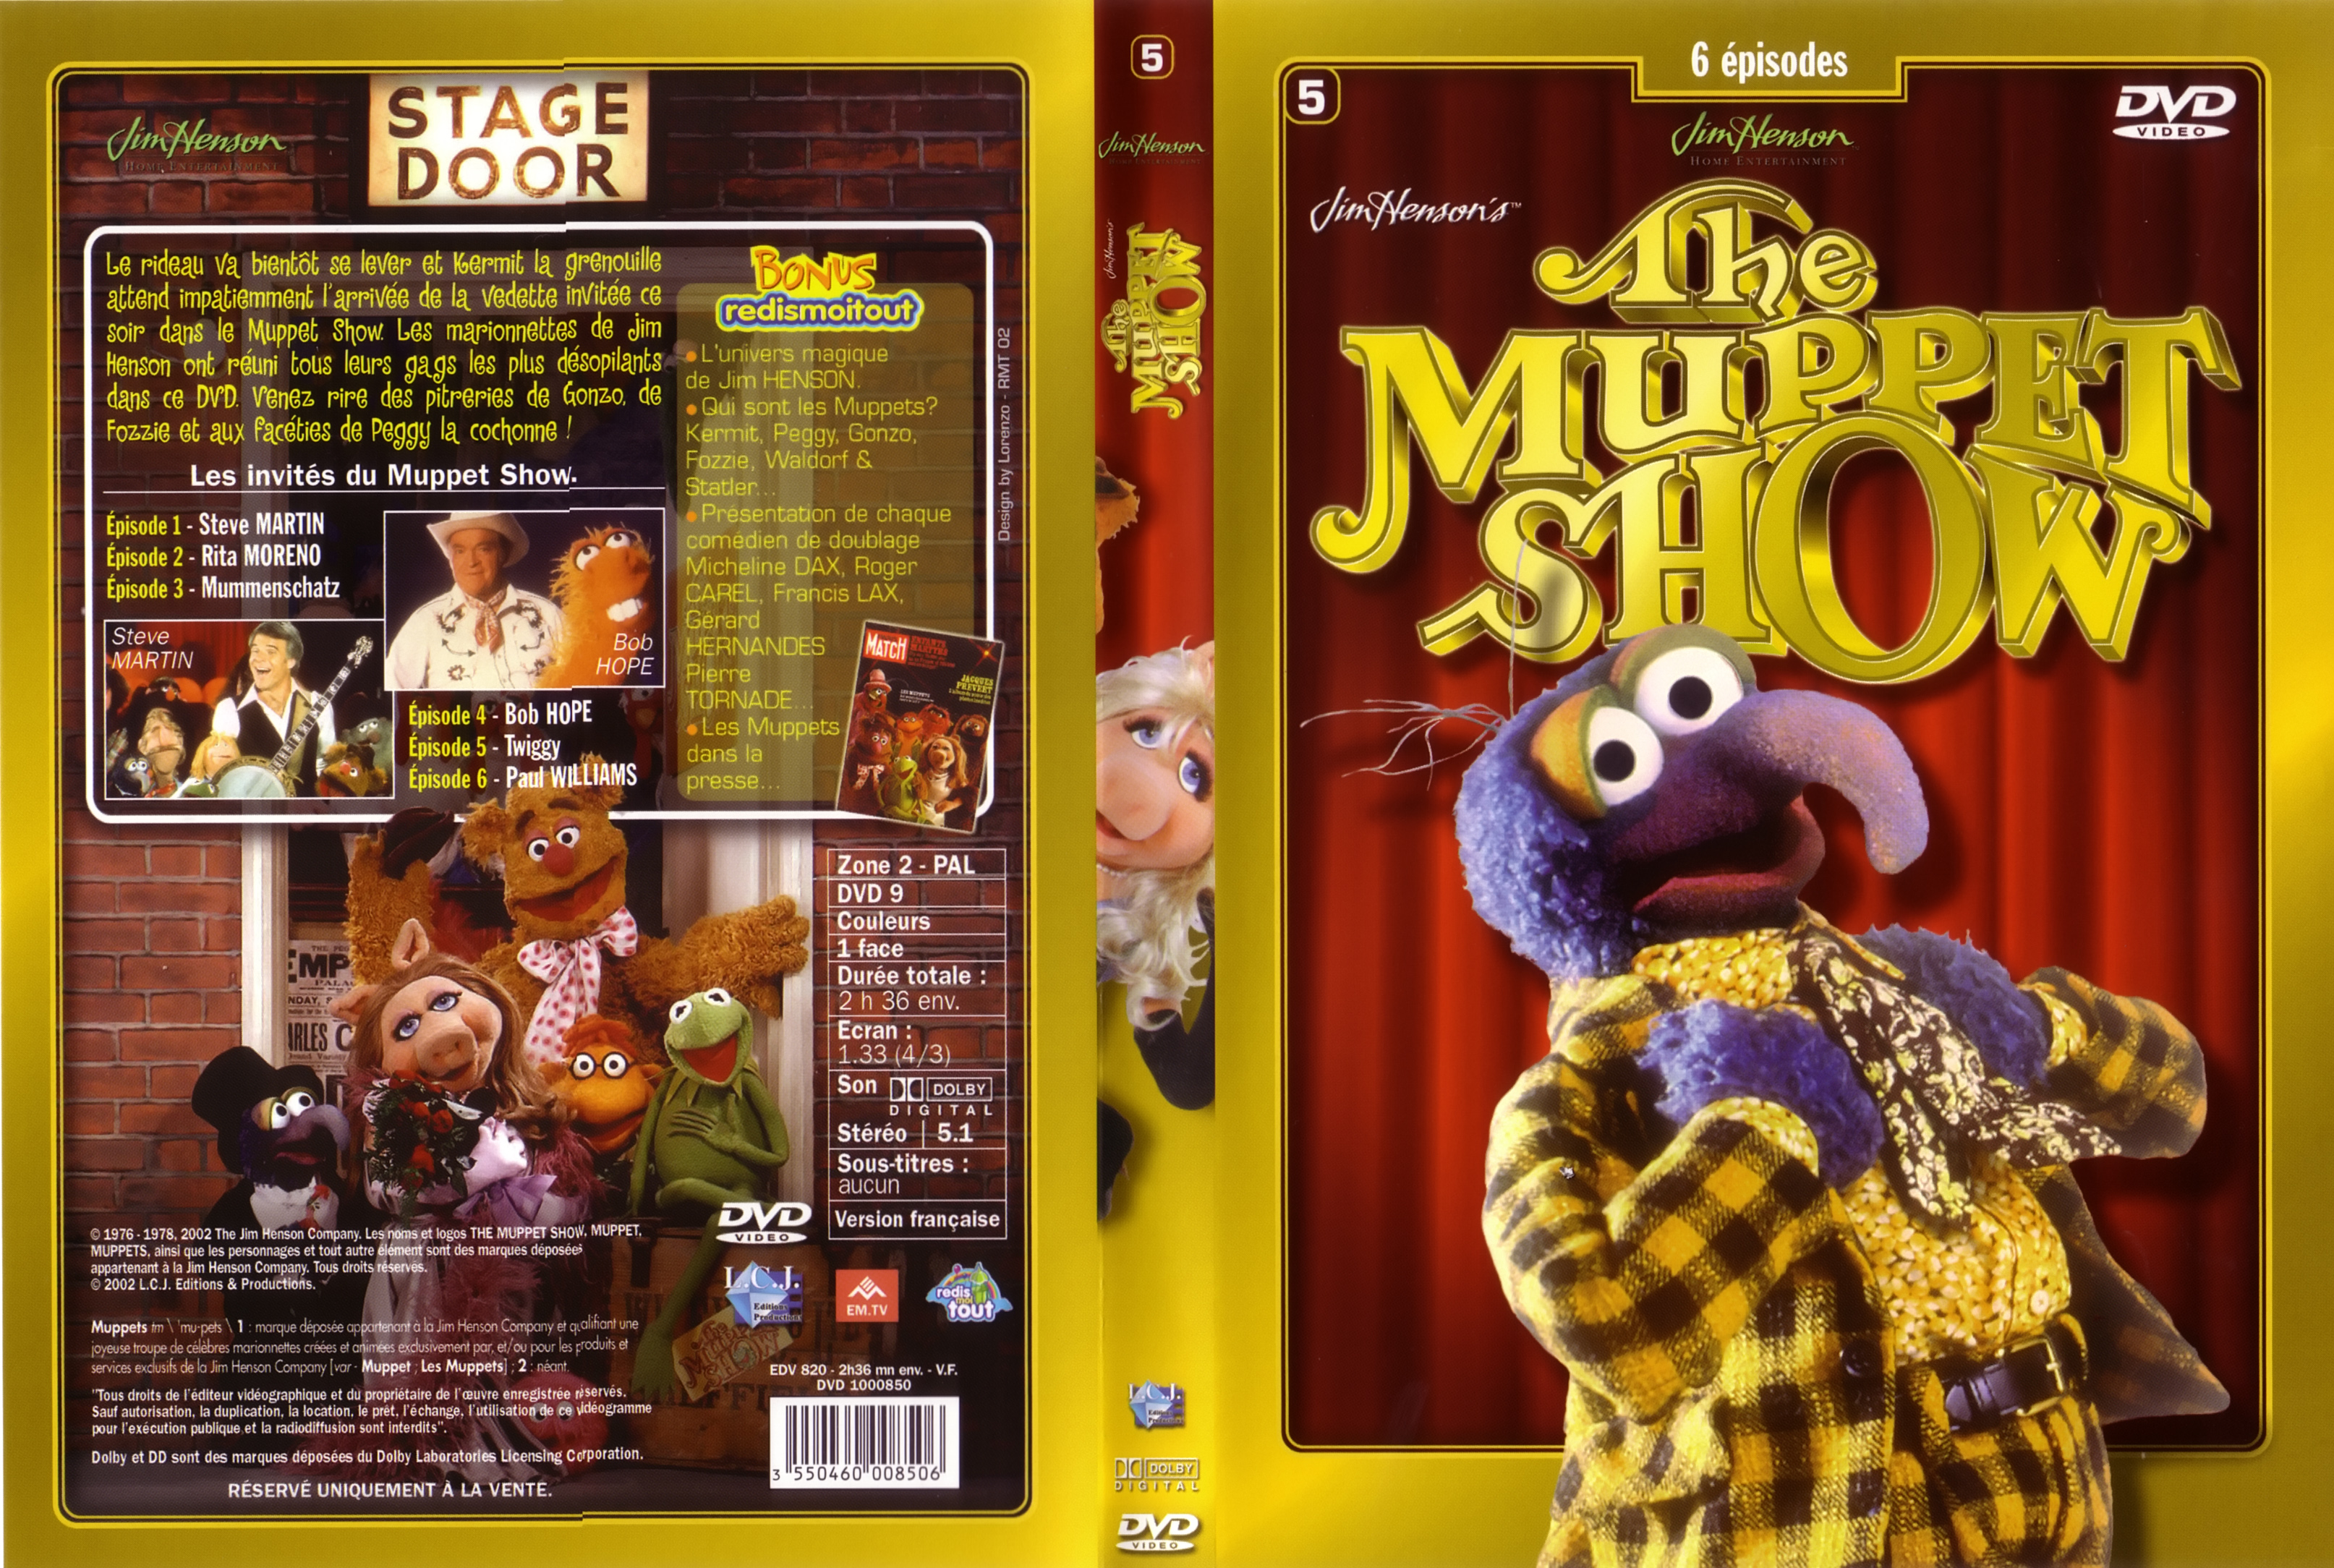 Jaquette Dvd De The Muppet Show Vol 1 Dvd 5 Cinéma Passion